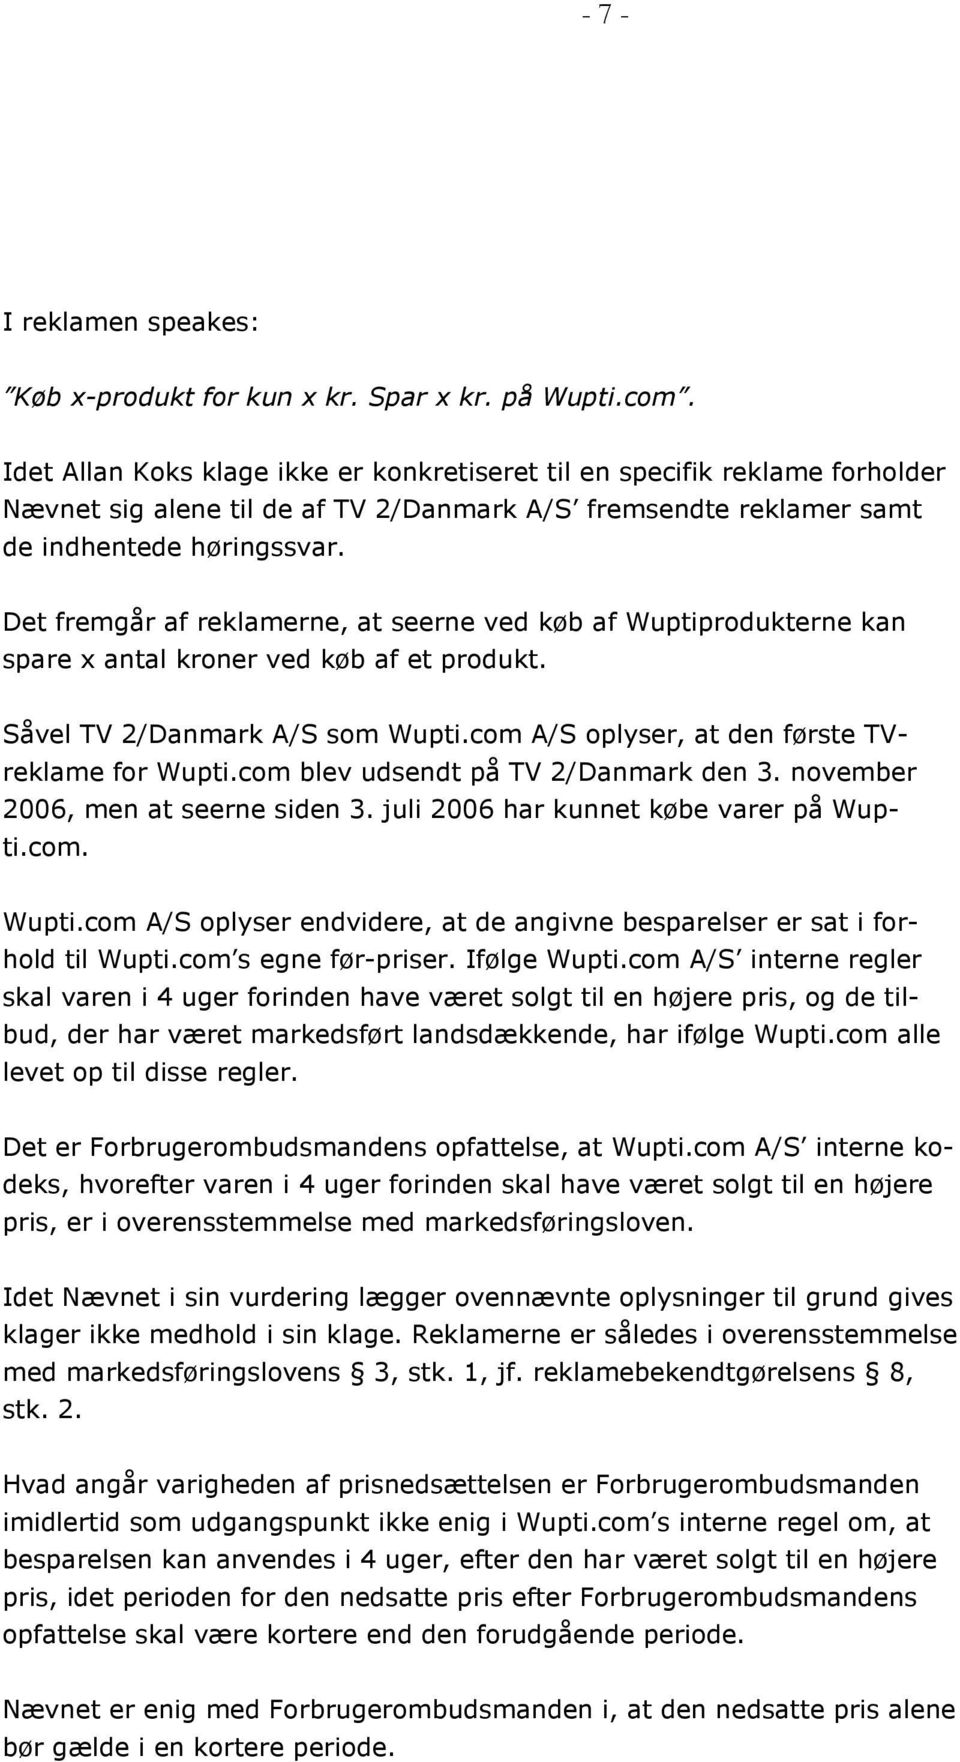 Det fremgår af reklamerne, at seerne ved køb af Wuptiprodukterne kan spare x antal kroner ved køb af et produkt. Såvel TV 2/Danmark A/S som Wupti.com A/S oplyser, at den første TVreklame for Wupti.